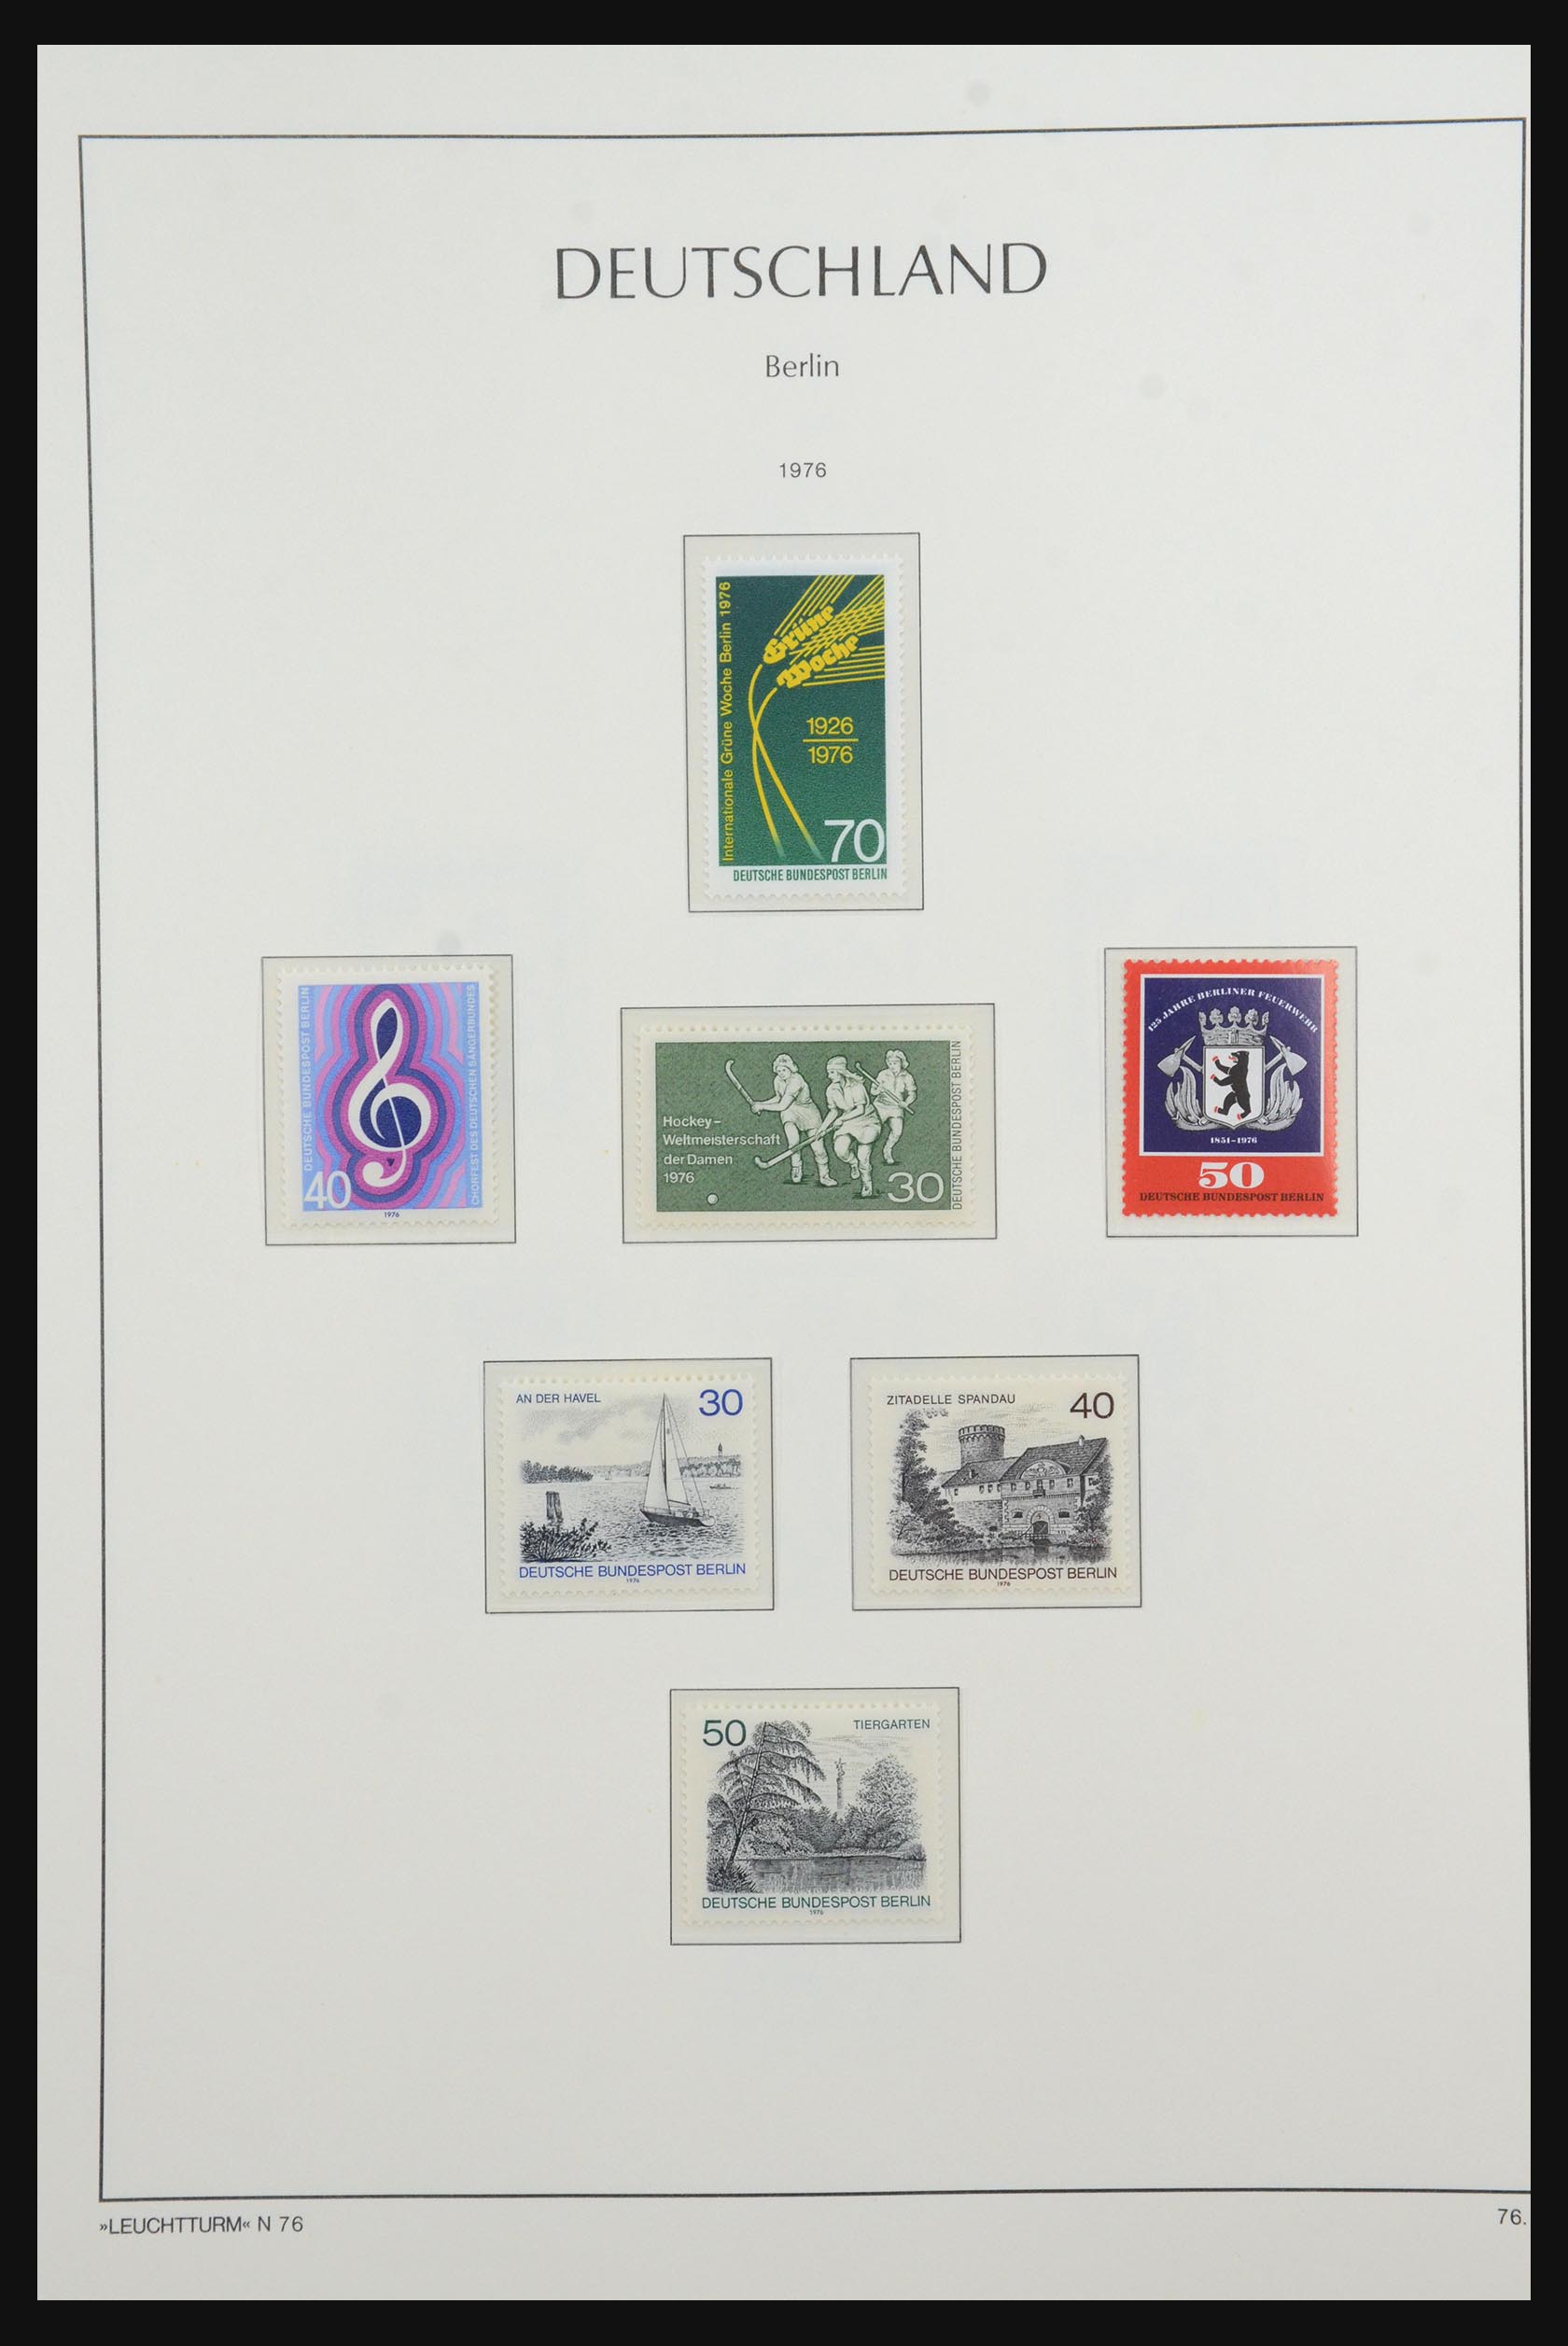 31601 047 - 31601 Bundespost, Berlijn en Saar 1948-2008.